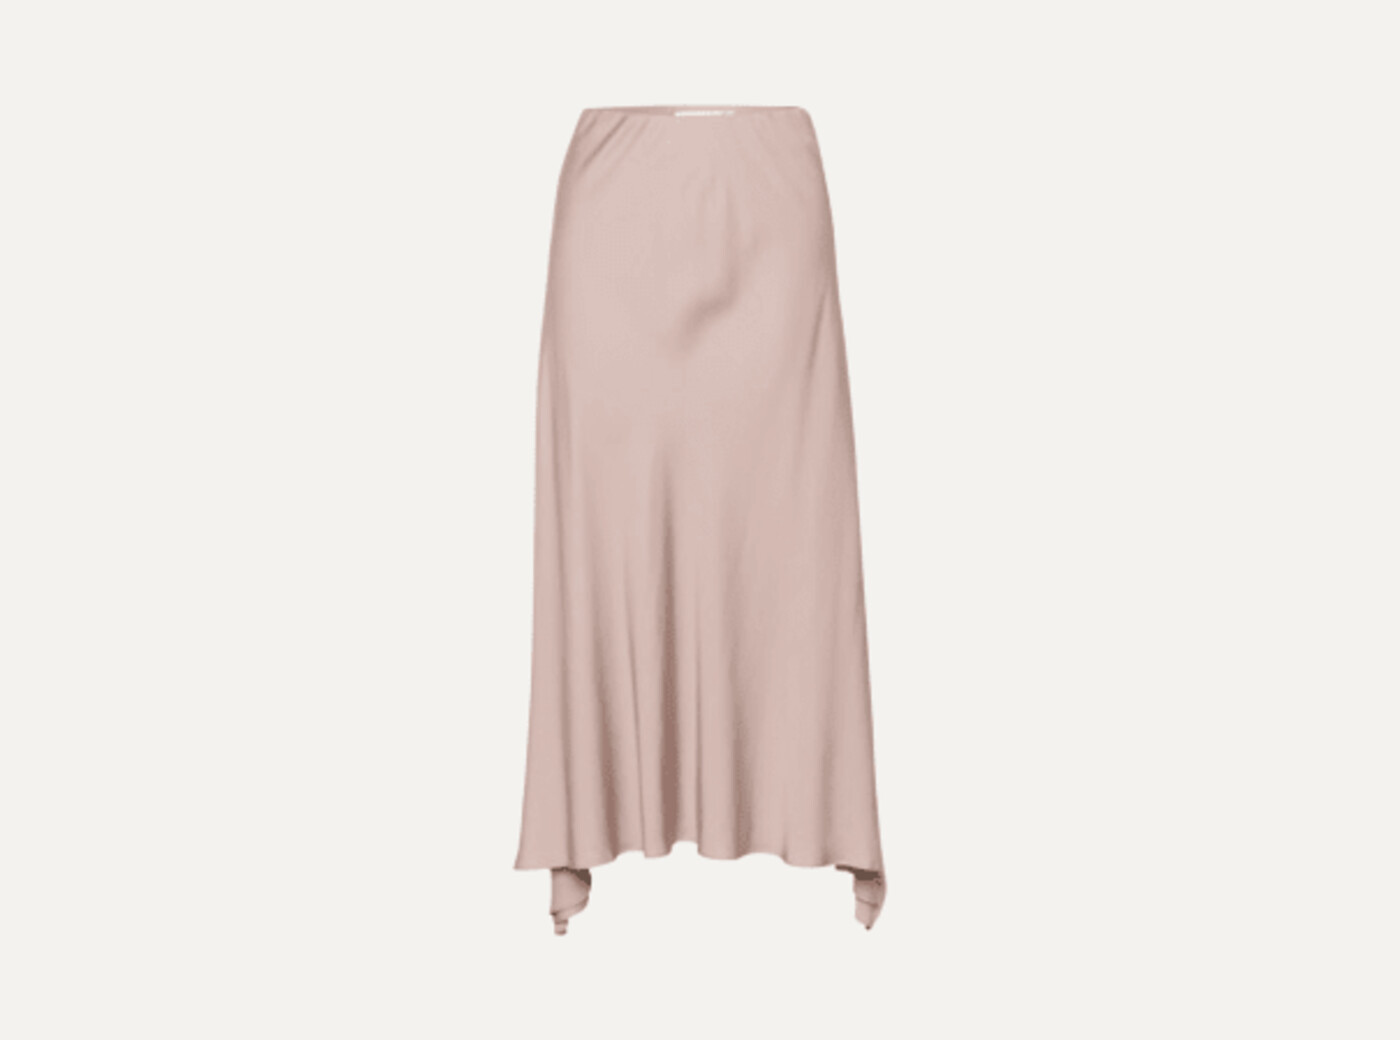 HidiIW Skirt